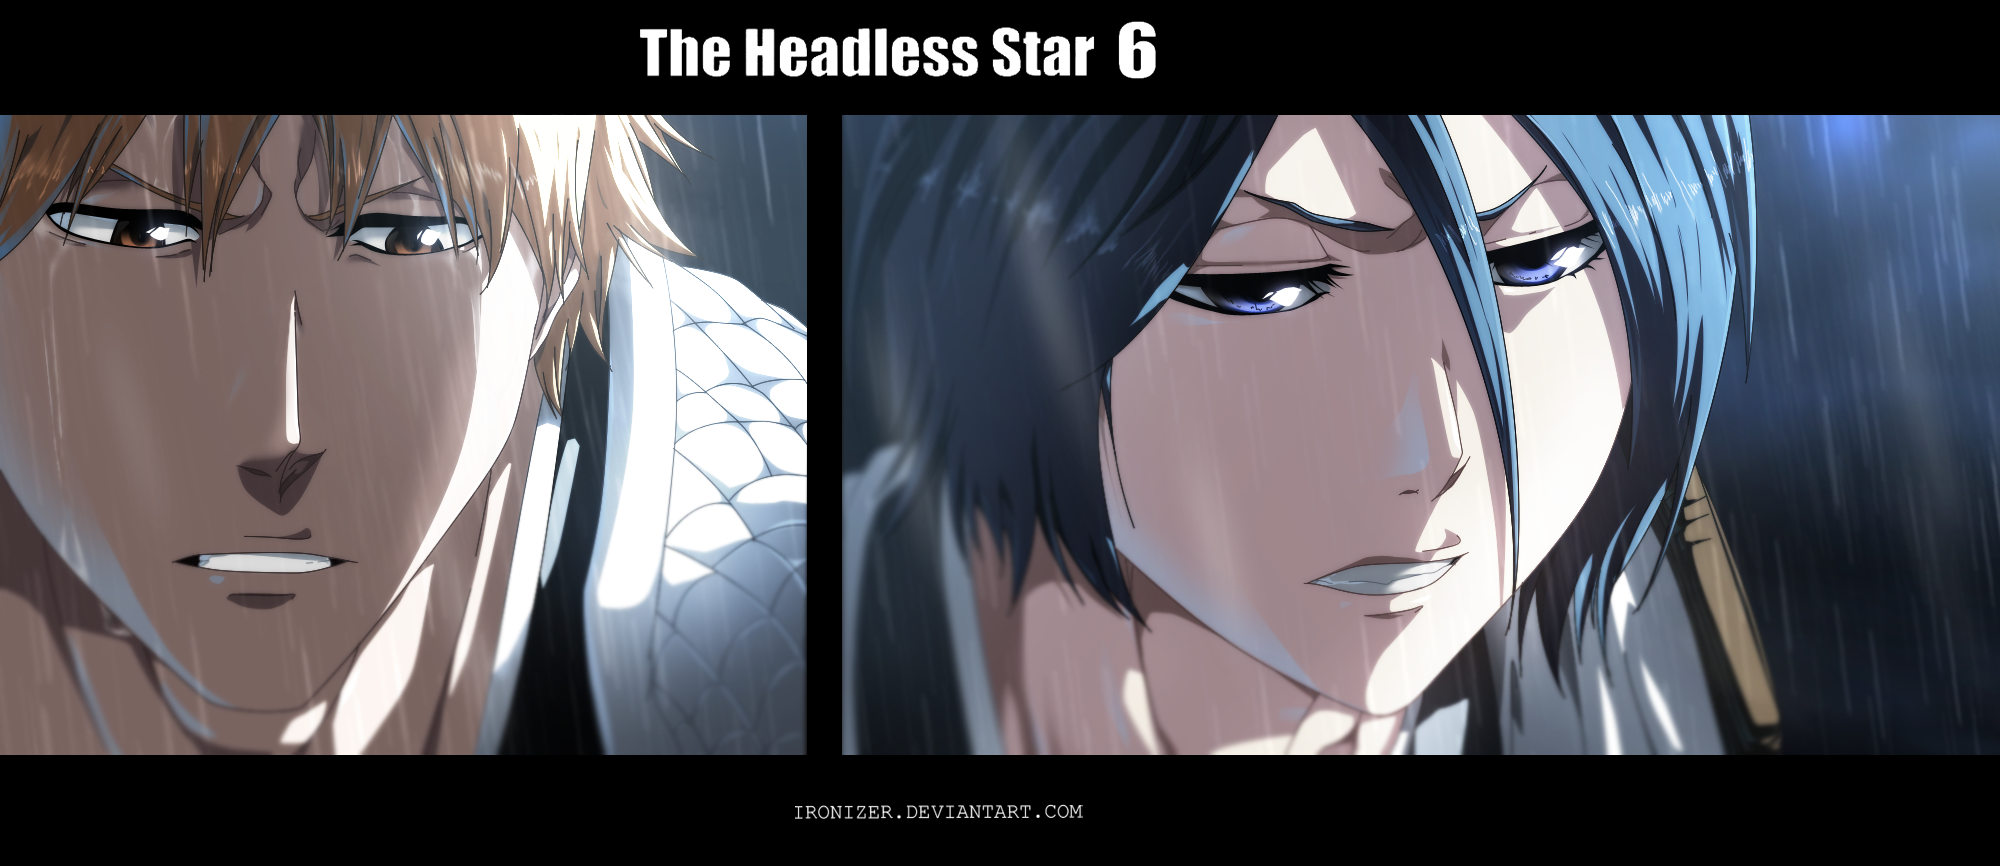 Bleach – Thousand-Year Blood War 1×21 Review: 'The Headless Star